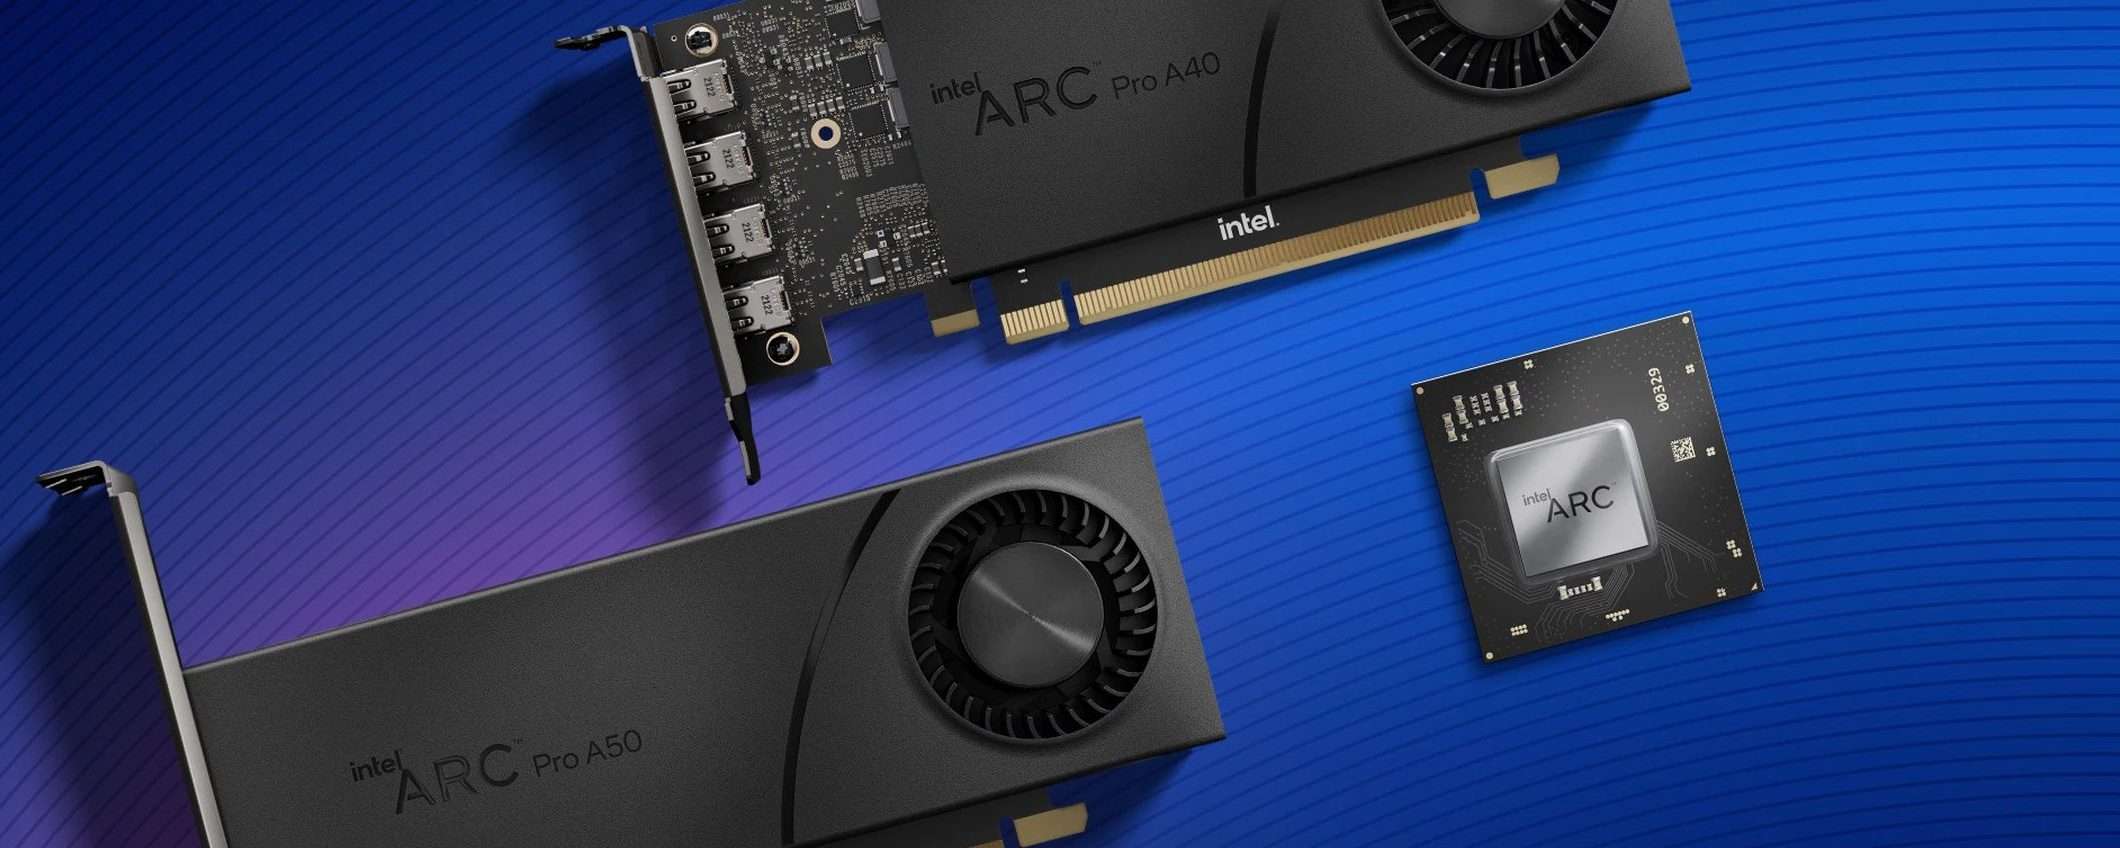 Intel annuncia tre GPU Arc per workstation